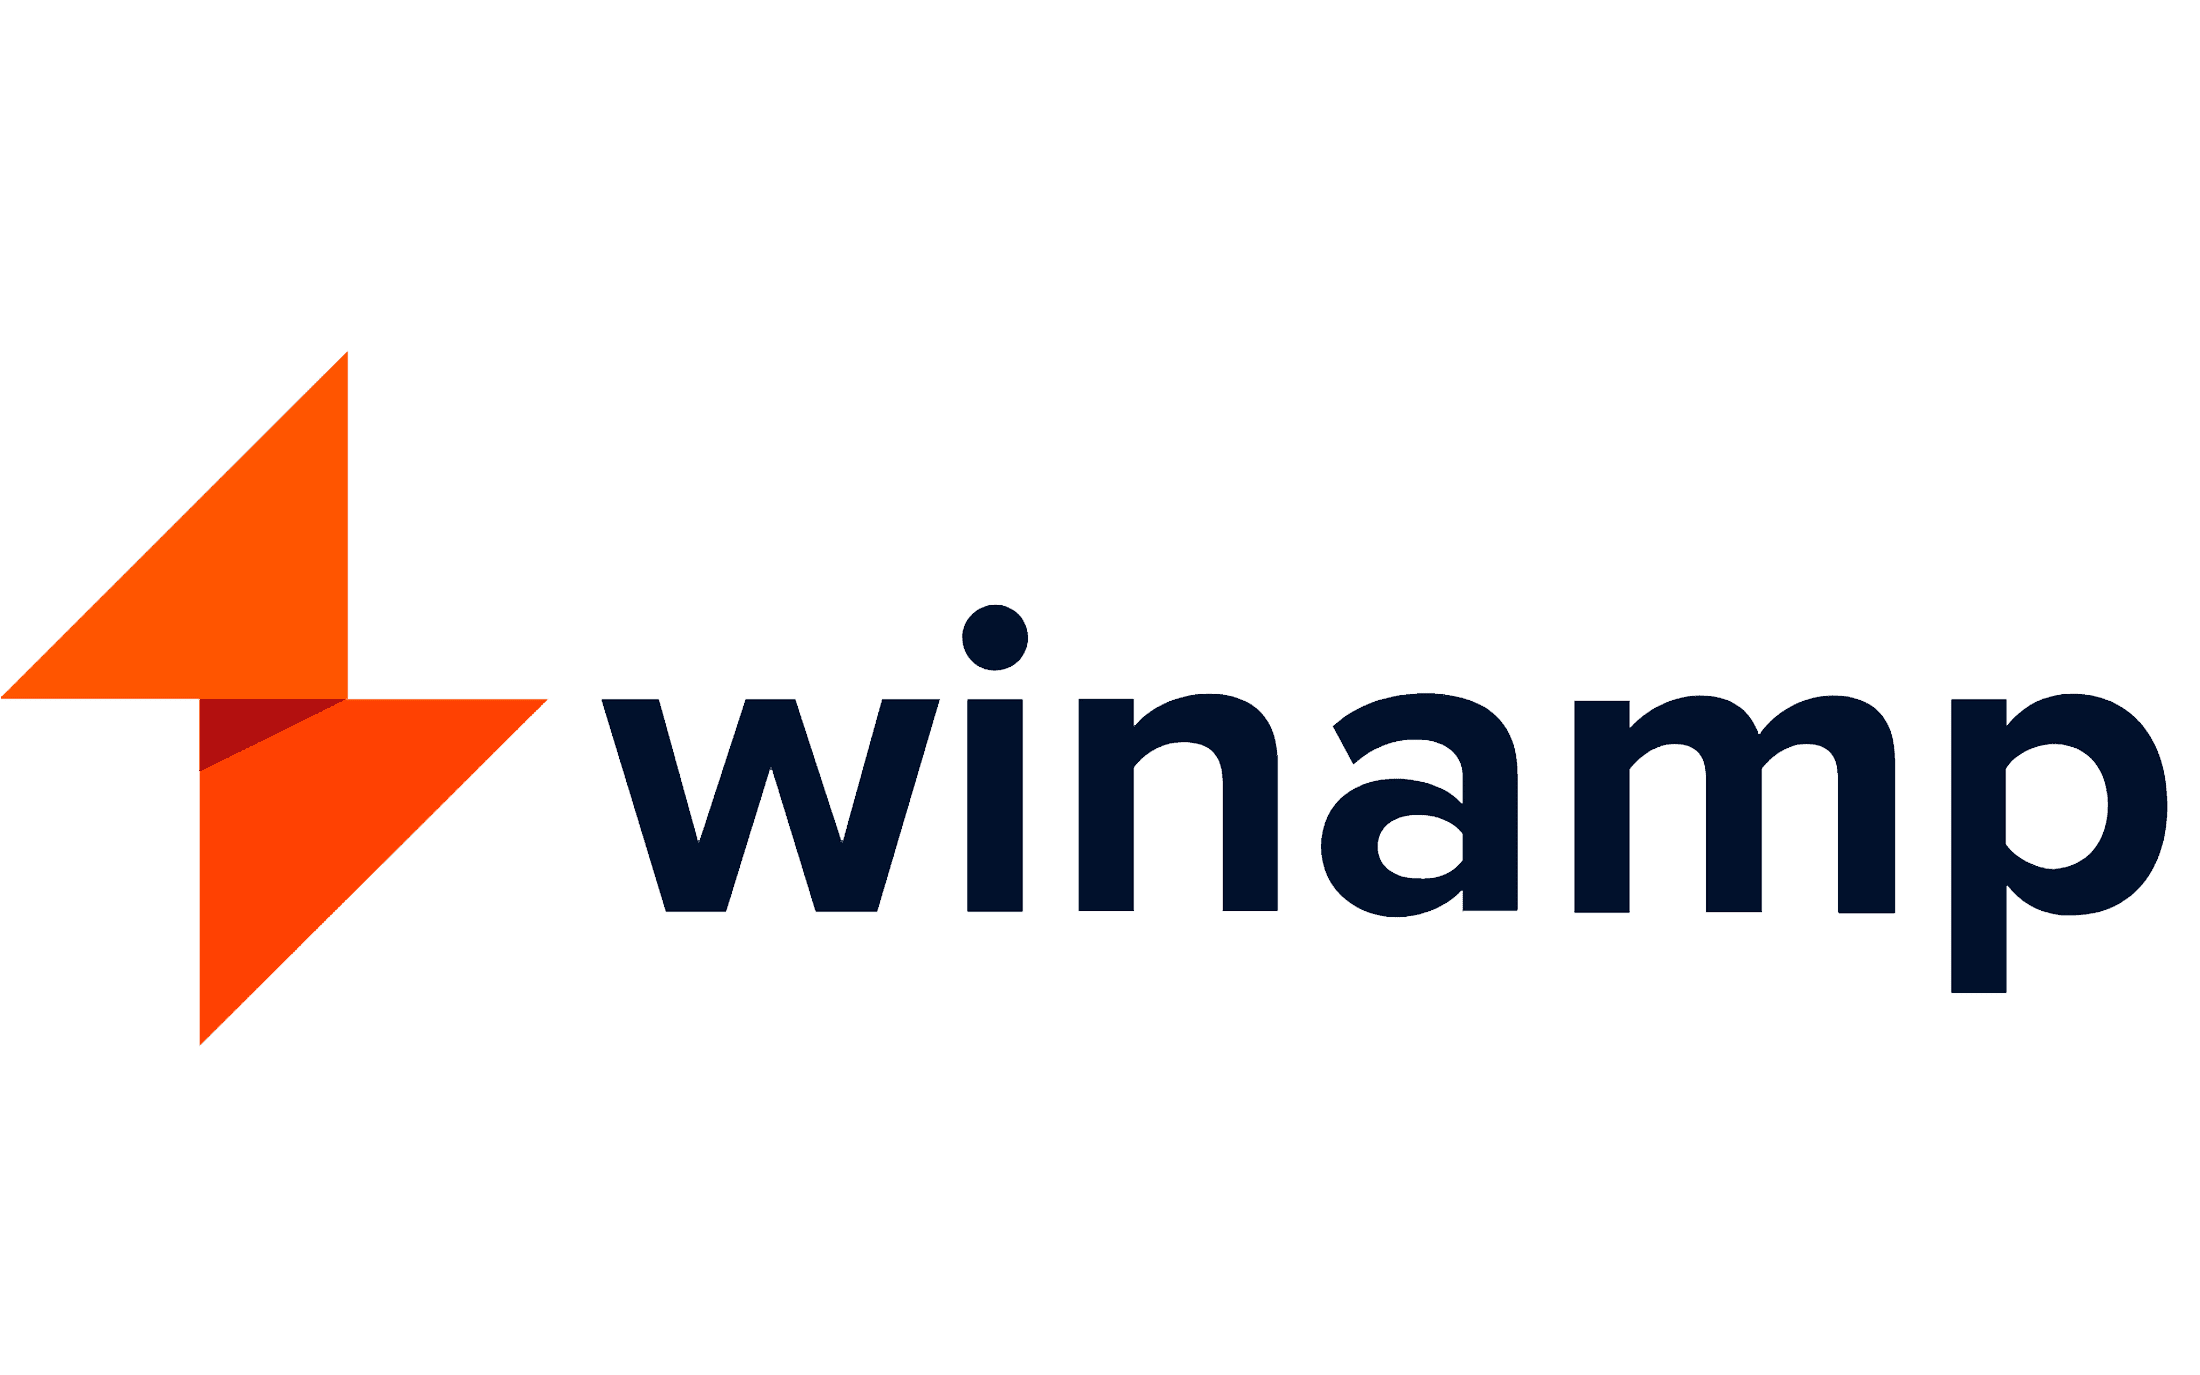 winamp logo